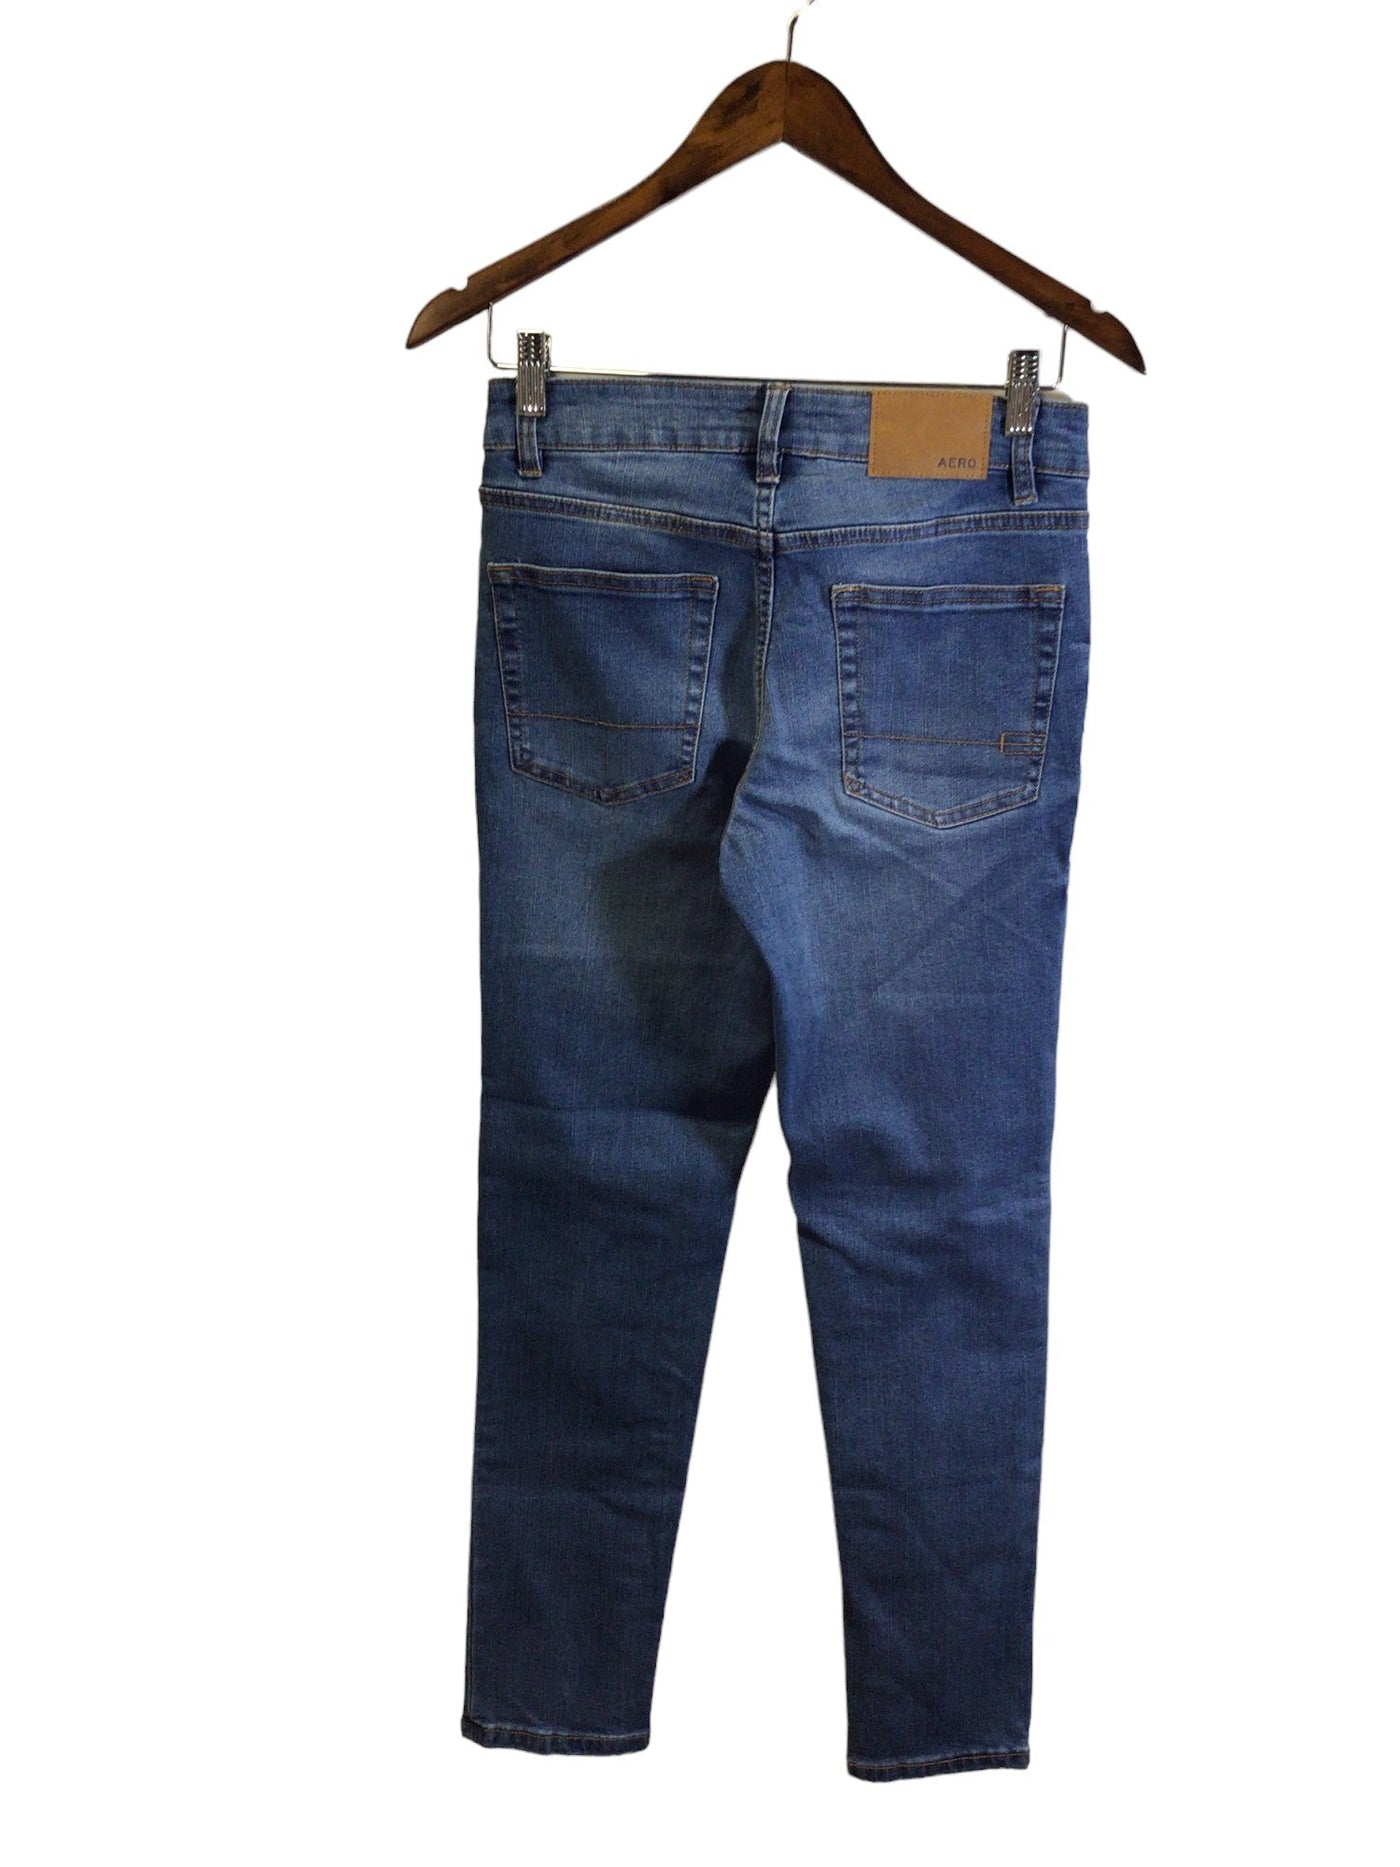 AEROPOSTALE Women Straight-Legged Jeans Regular fit in Blue - Size 27x30 | 12.29 $ KOOP